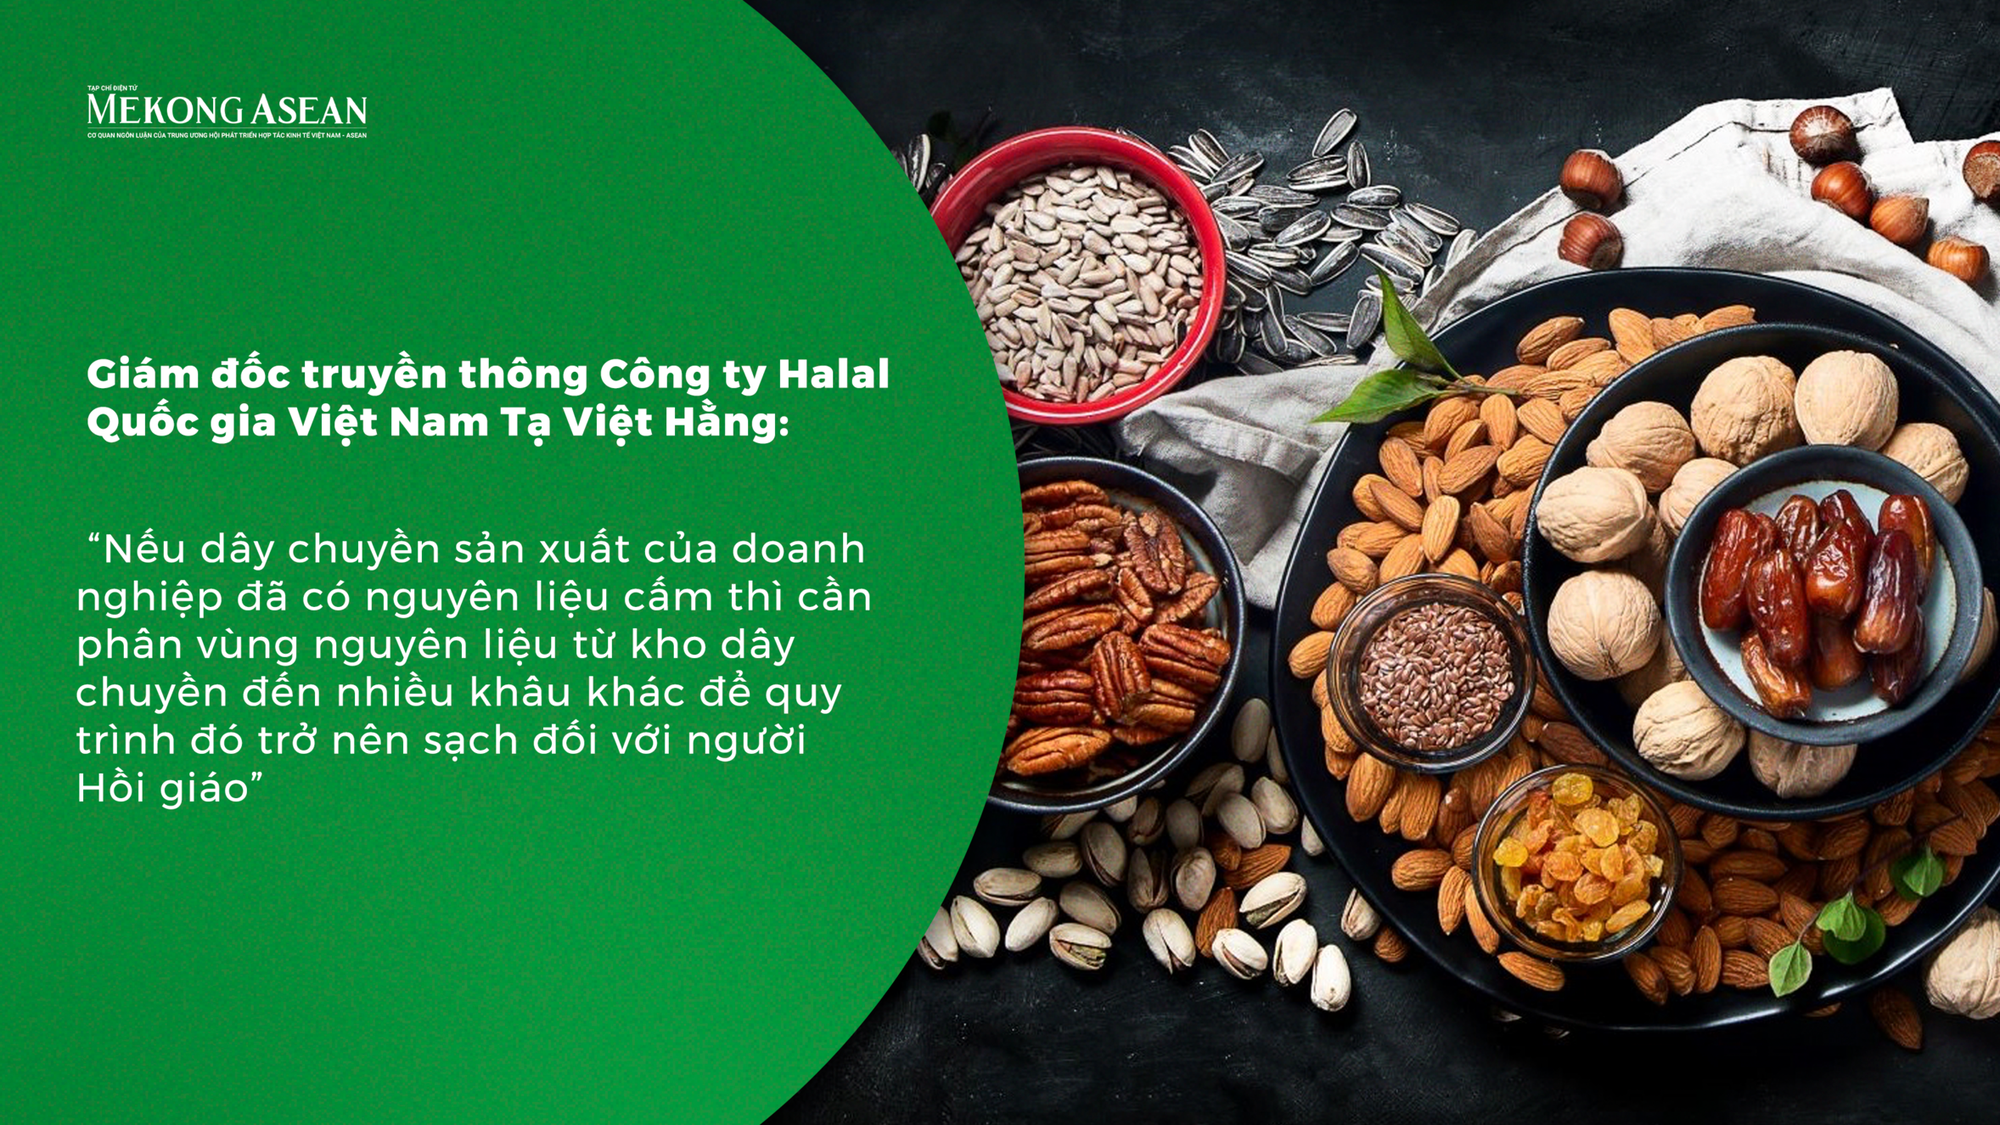 Chứng chỉ Halal - giấy thông hành đặc biệt cho doanh nghiệp xuất khẩu